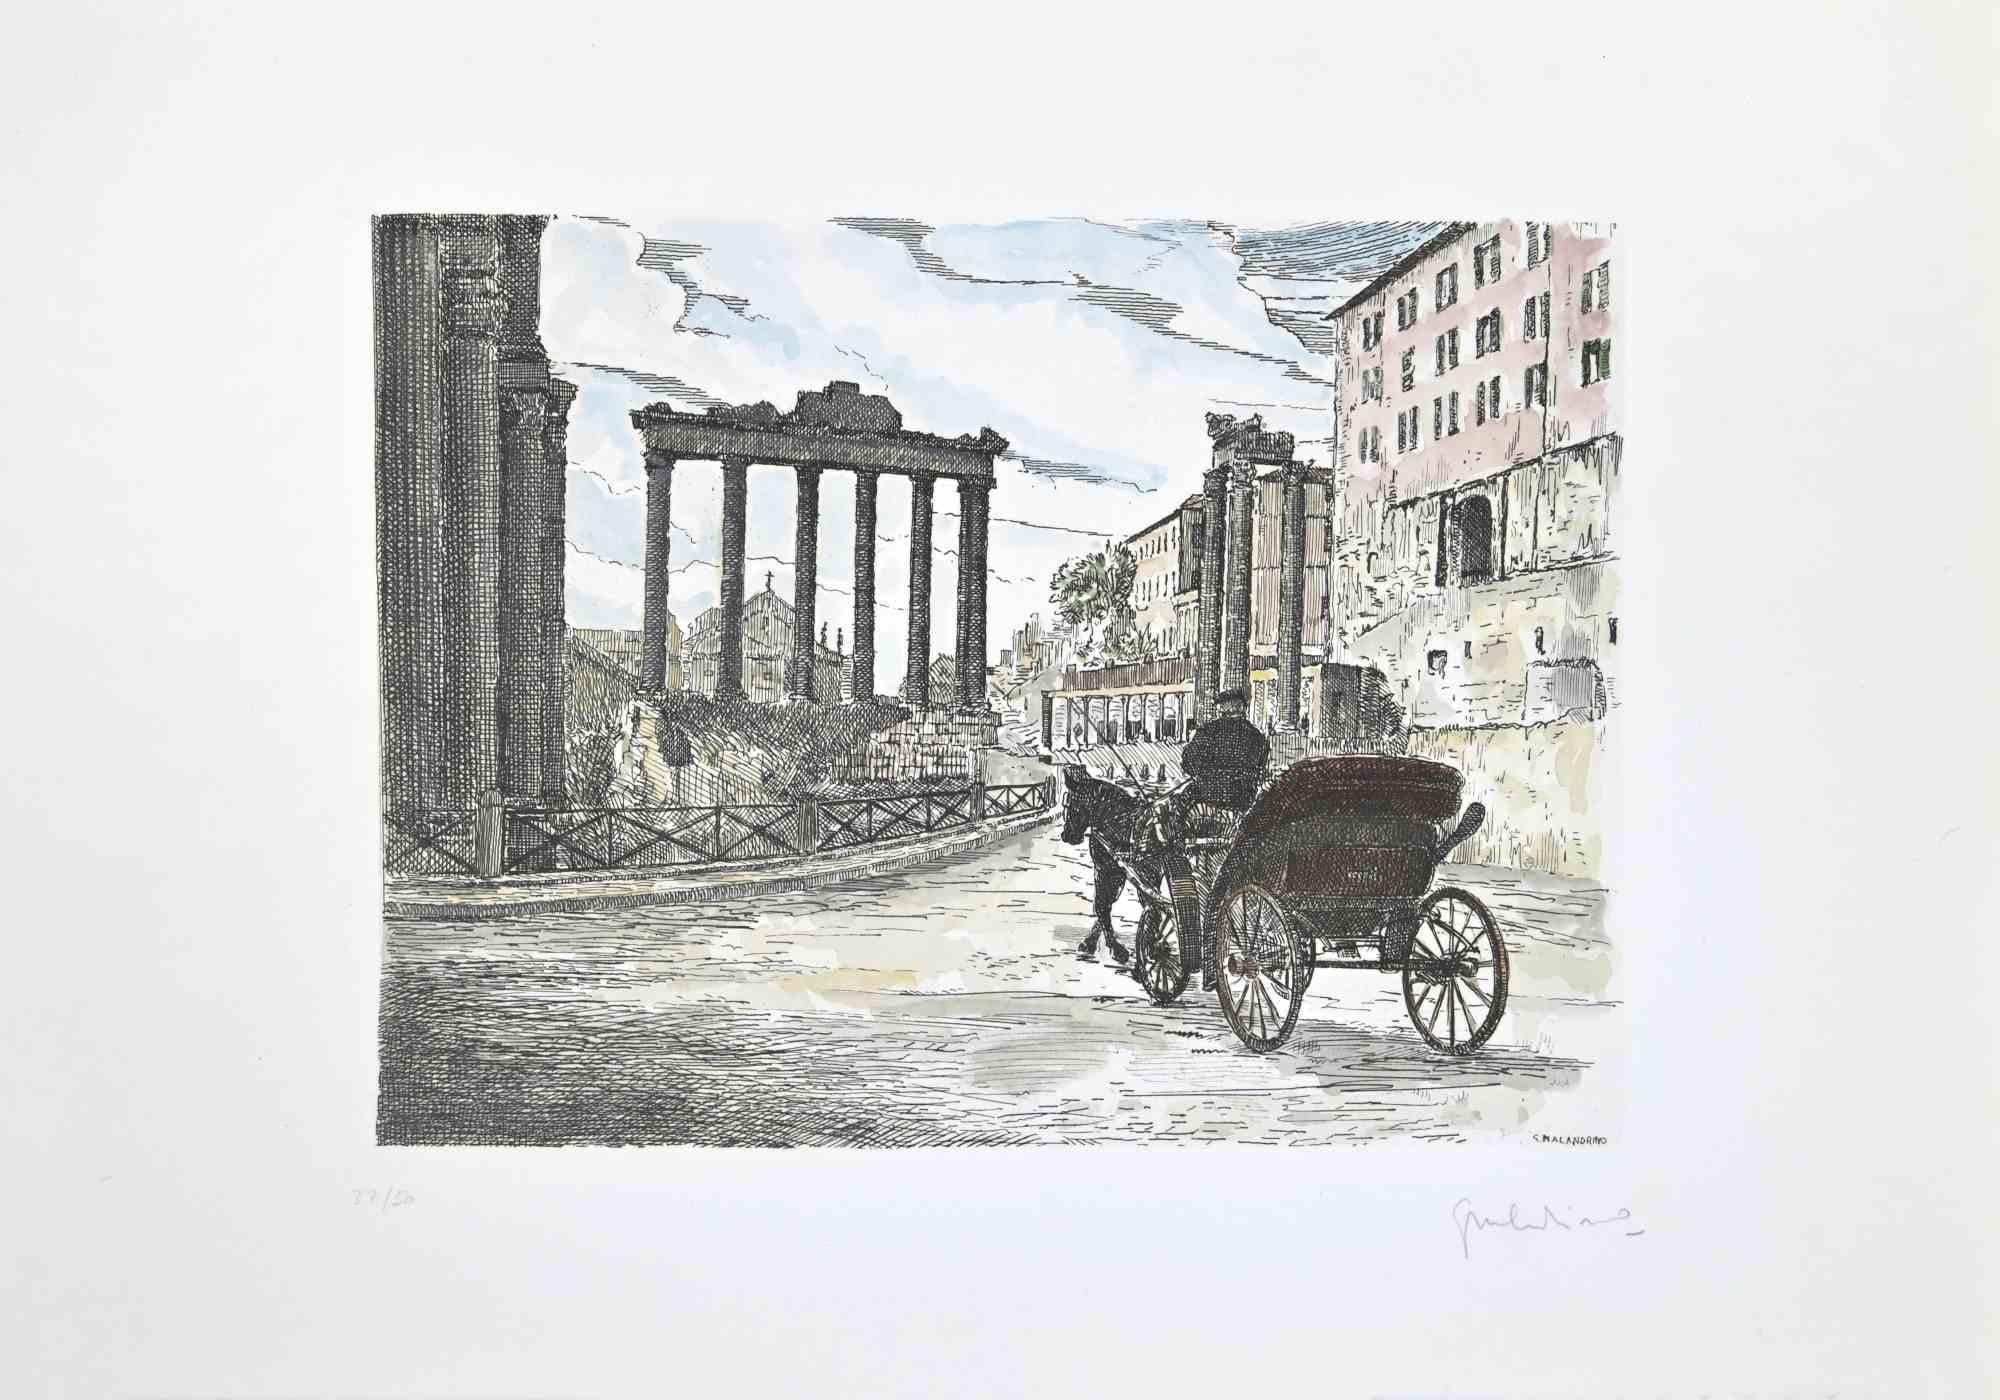 Roman Forum ist ein Kunstwerk, das von Giuseppe Malandrino realisiert wurde.

Druck in Radiertechnik und von Hand aquarelliert.

Vom Künstler in der rechten unteren Ecke mit Bleistift handsigniert.

Nummerierte Auflage,37/50.

Guter Zustand.

Dieses